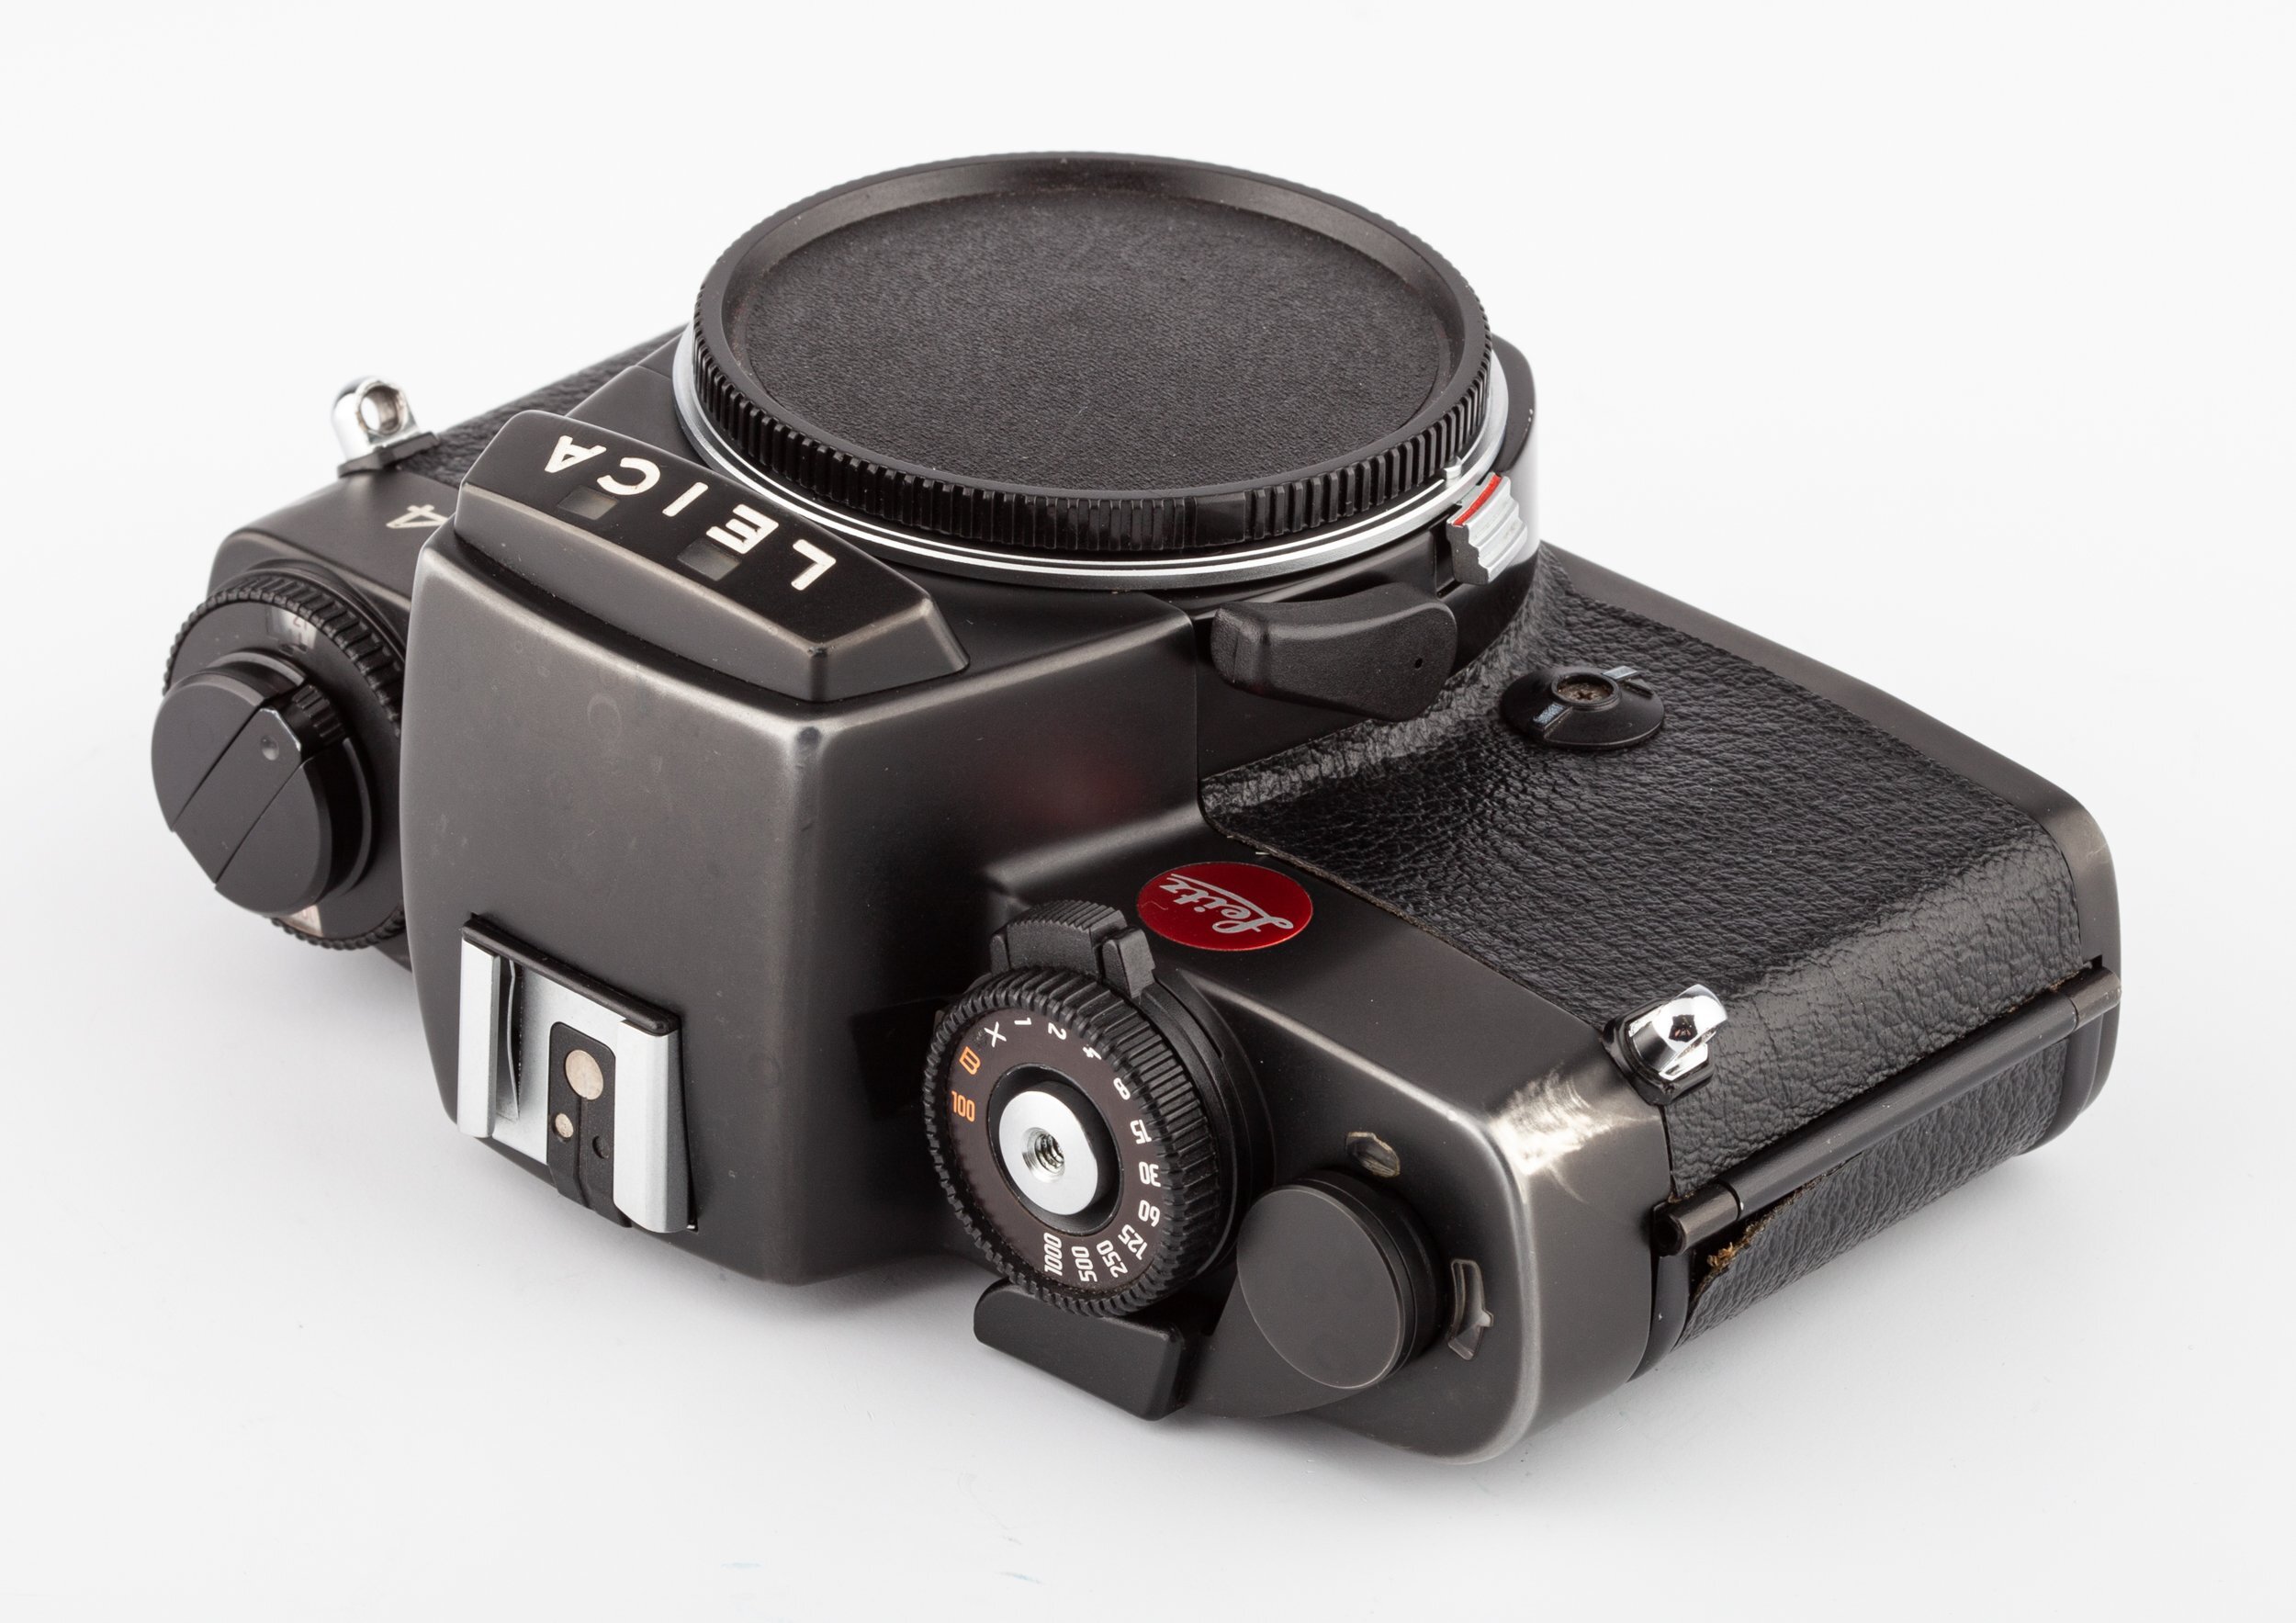 Leica R4 Gehäuse schwarz